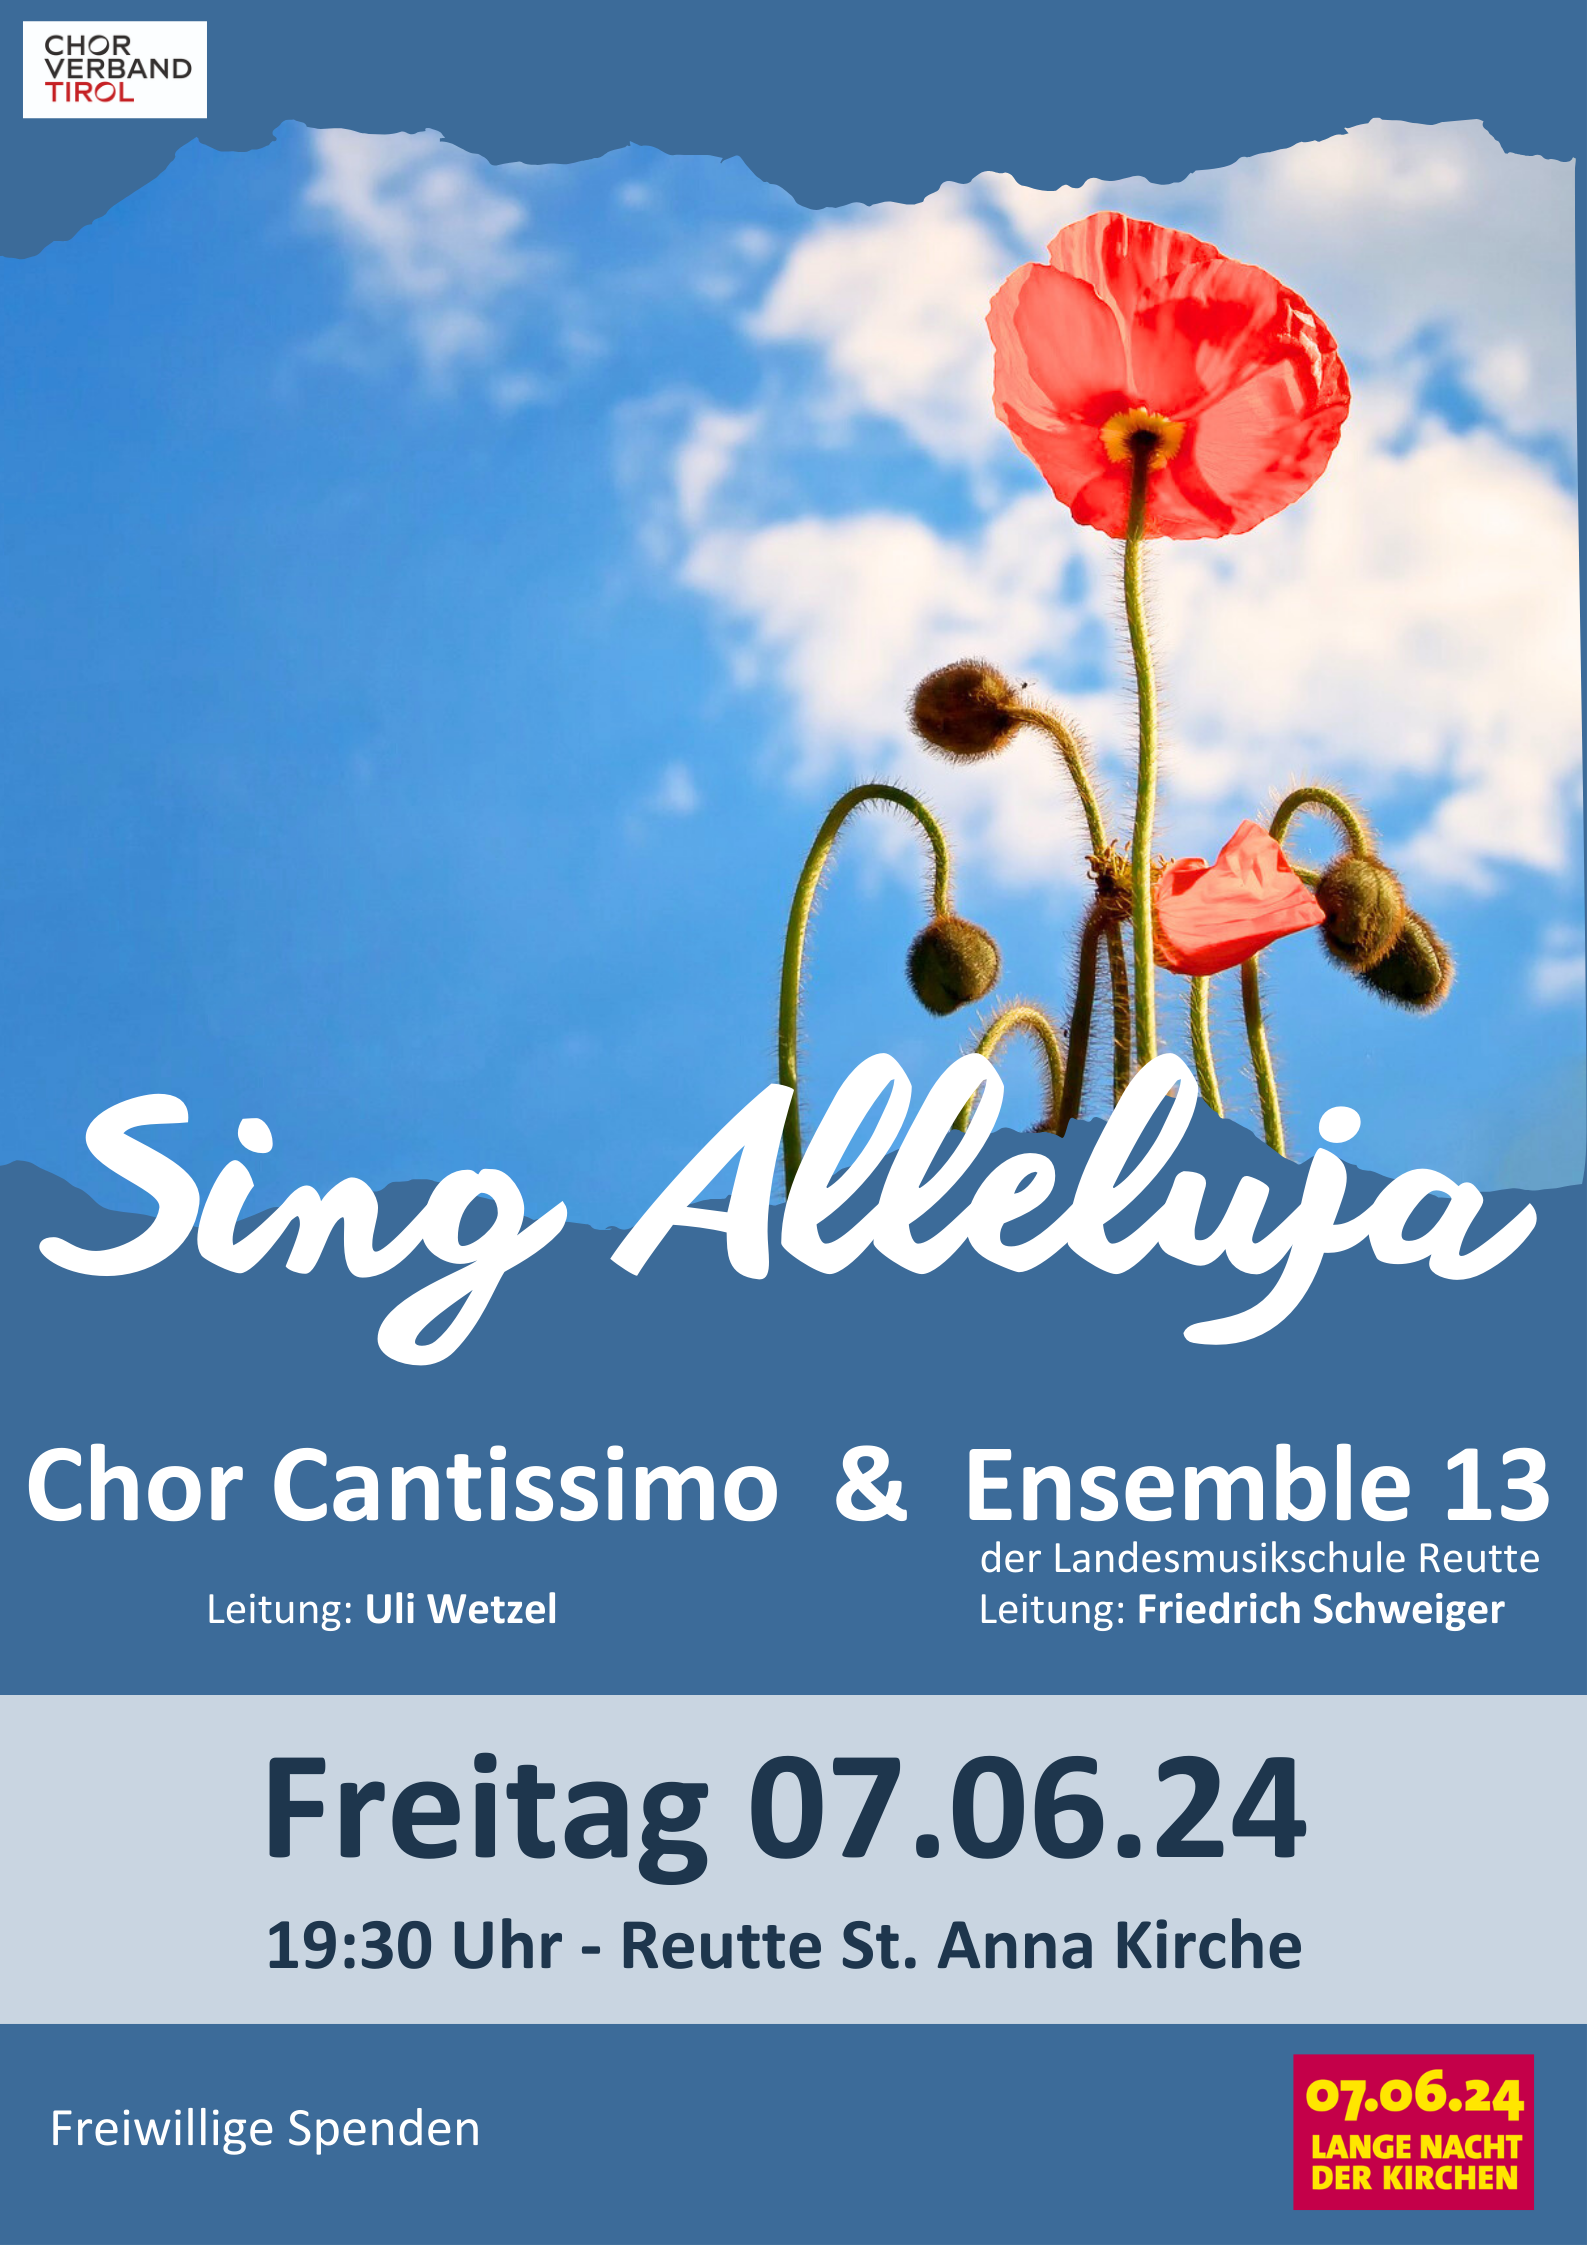 Plakat Konzertankündigung 7.6.24 um 19:30 Uhr Reutte St. Anna Kirche 